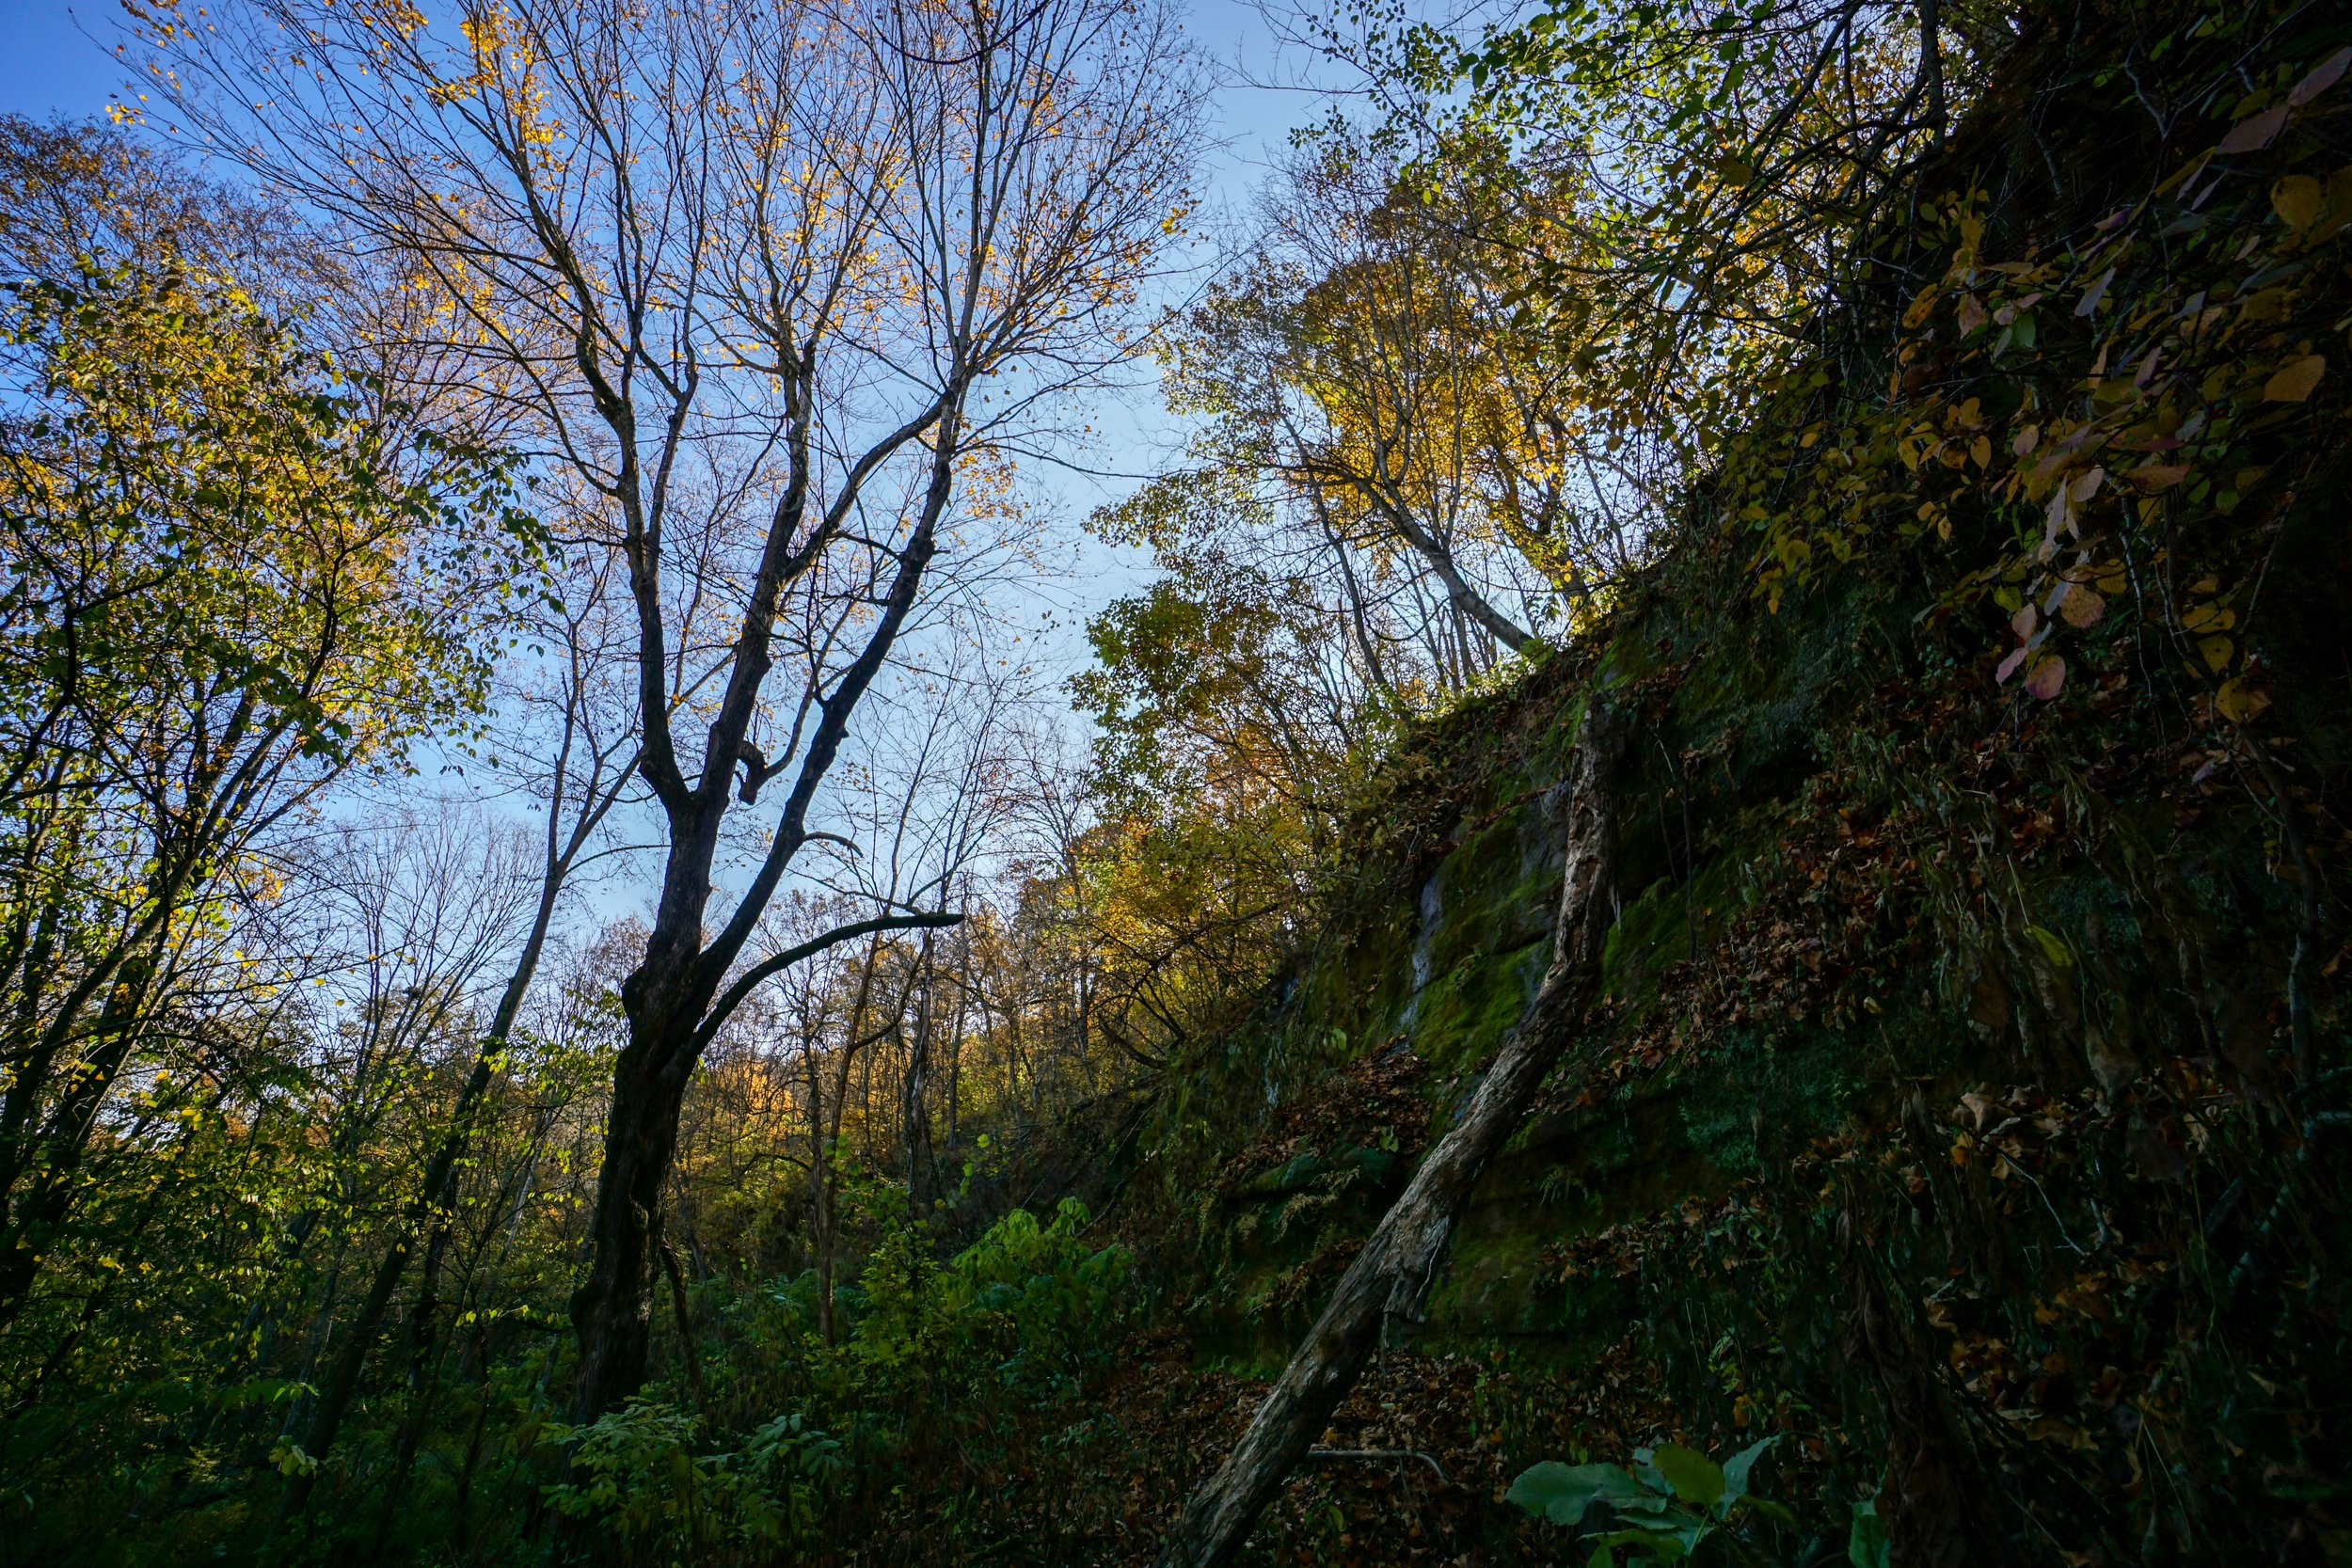 Coon Creek Cliffs (#201) - 10/15/22